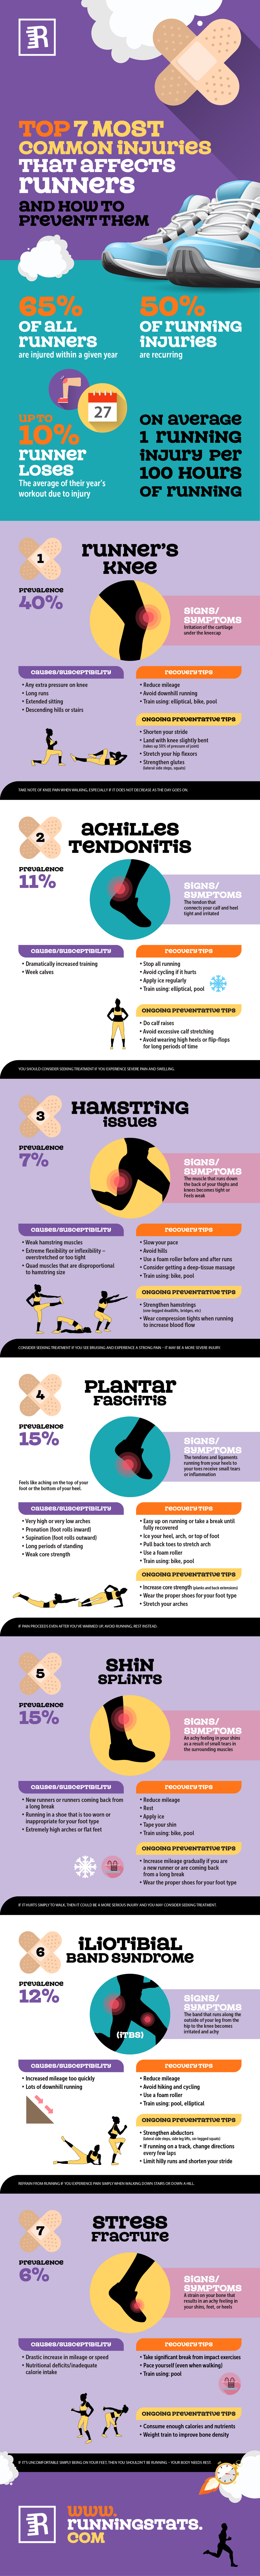 runners knee injury infographic